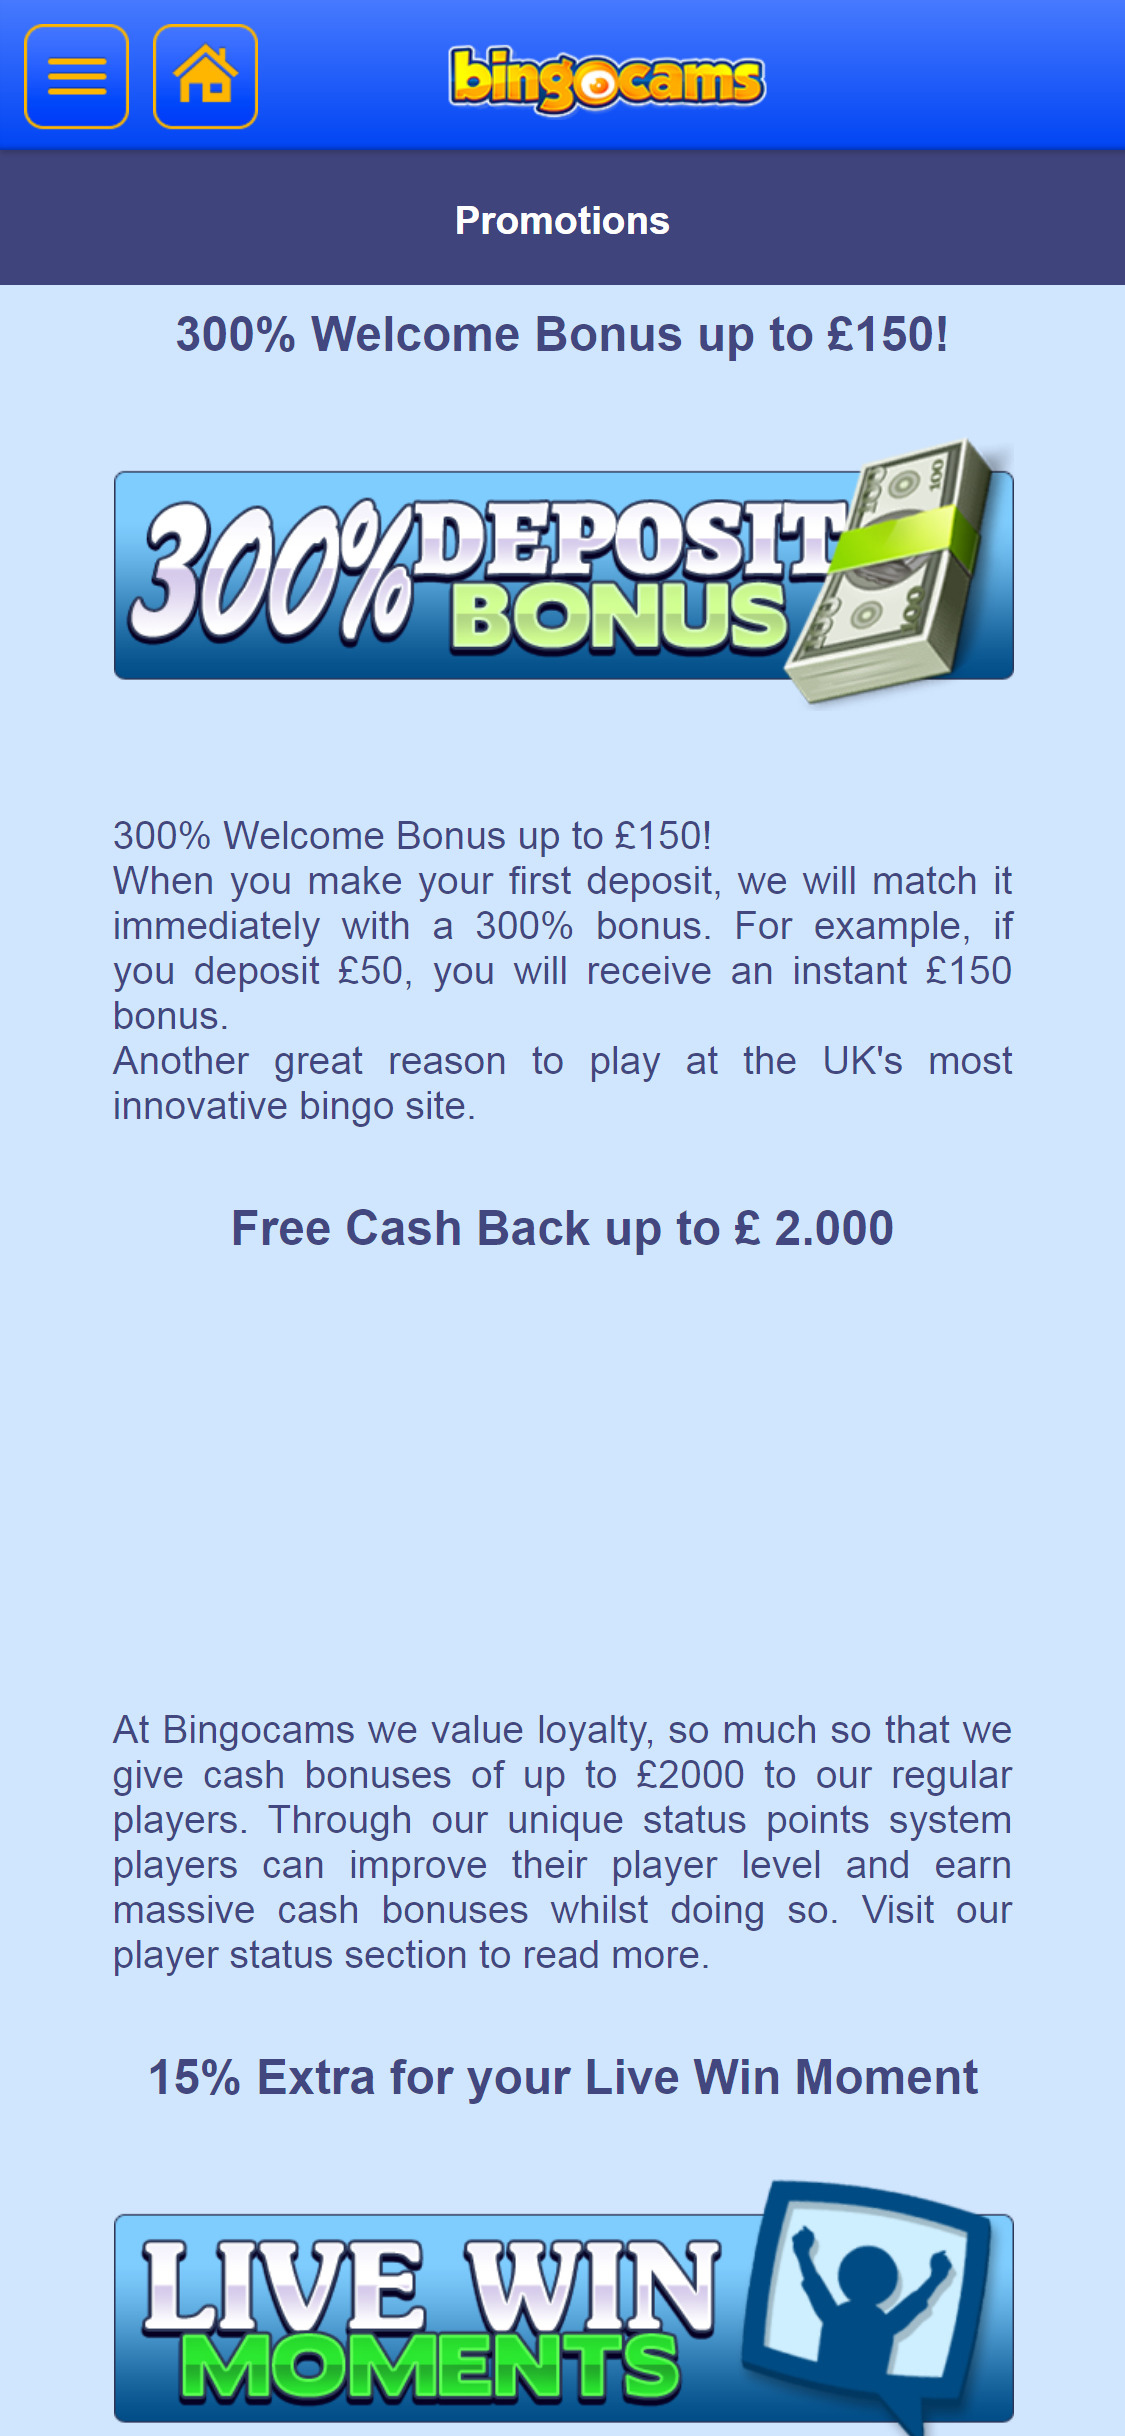 Bingocams Casino Mobile No Deposit Bonus Review